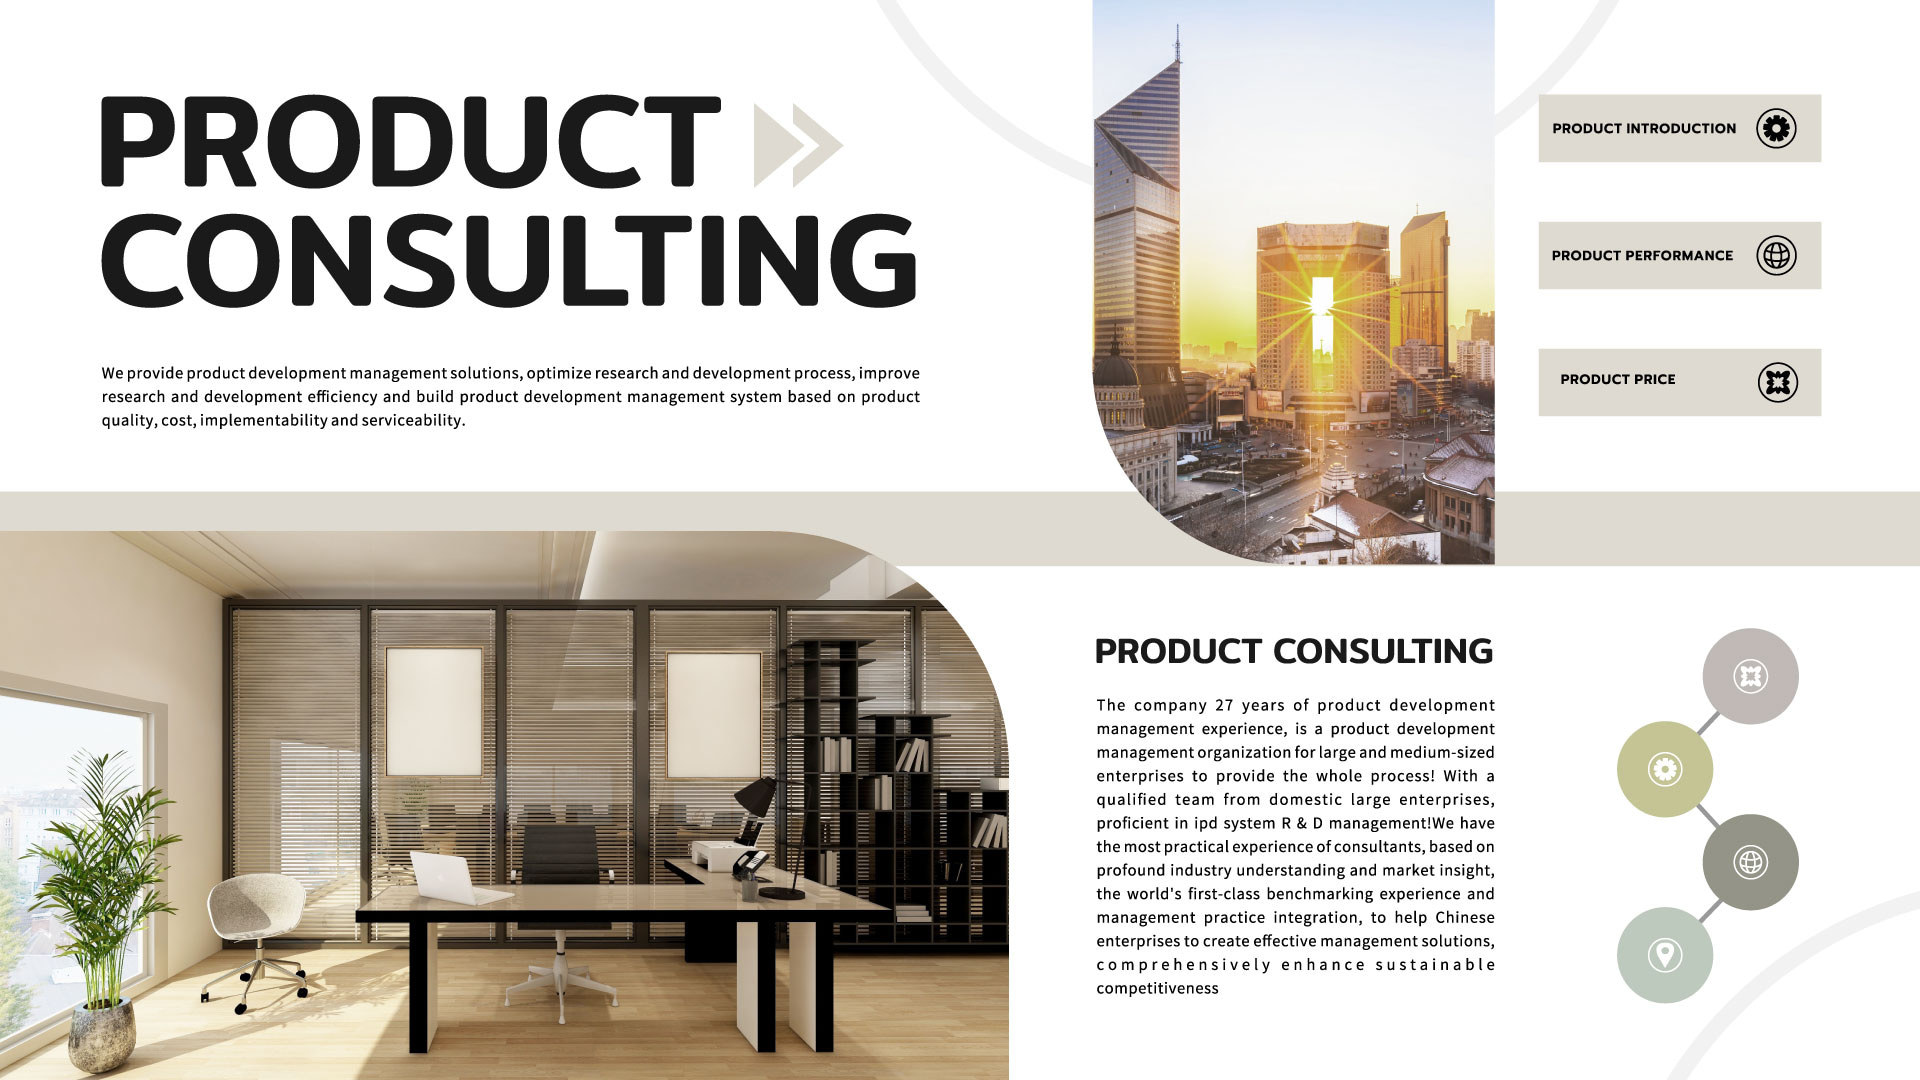 产品咨询手册商业产品介绍模版 向量图片